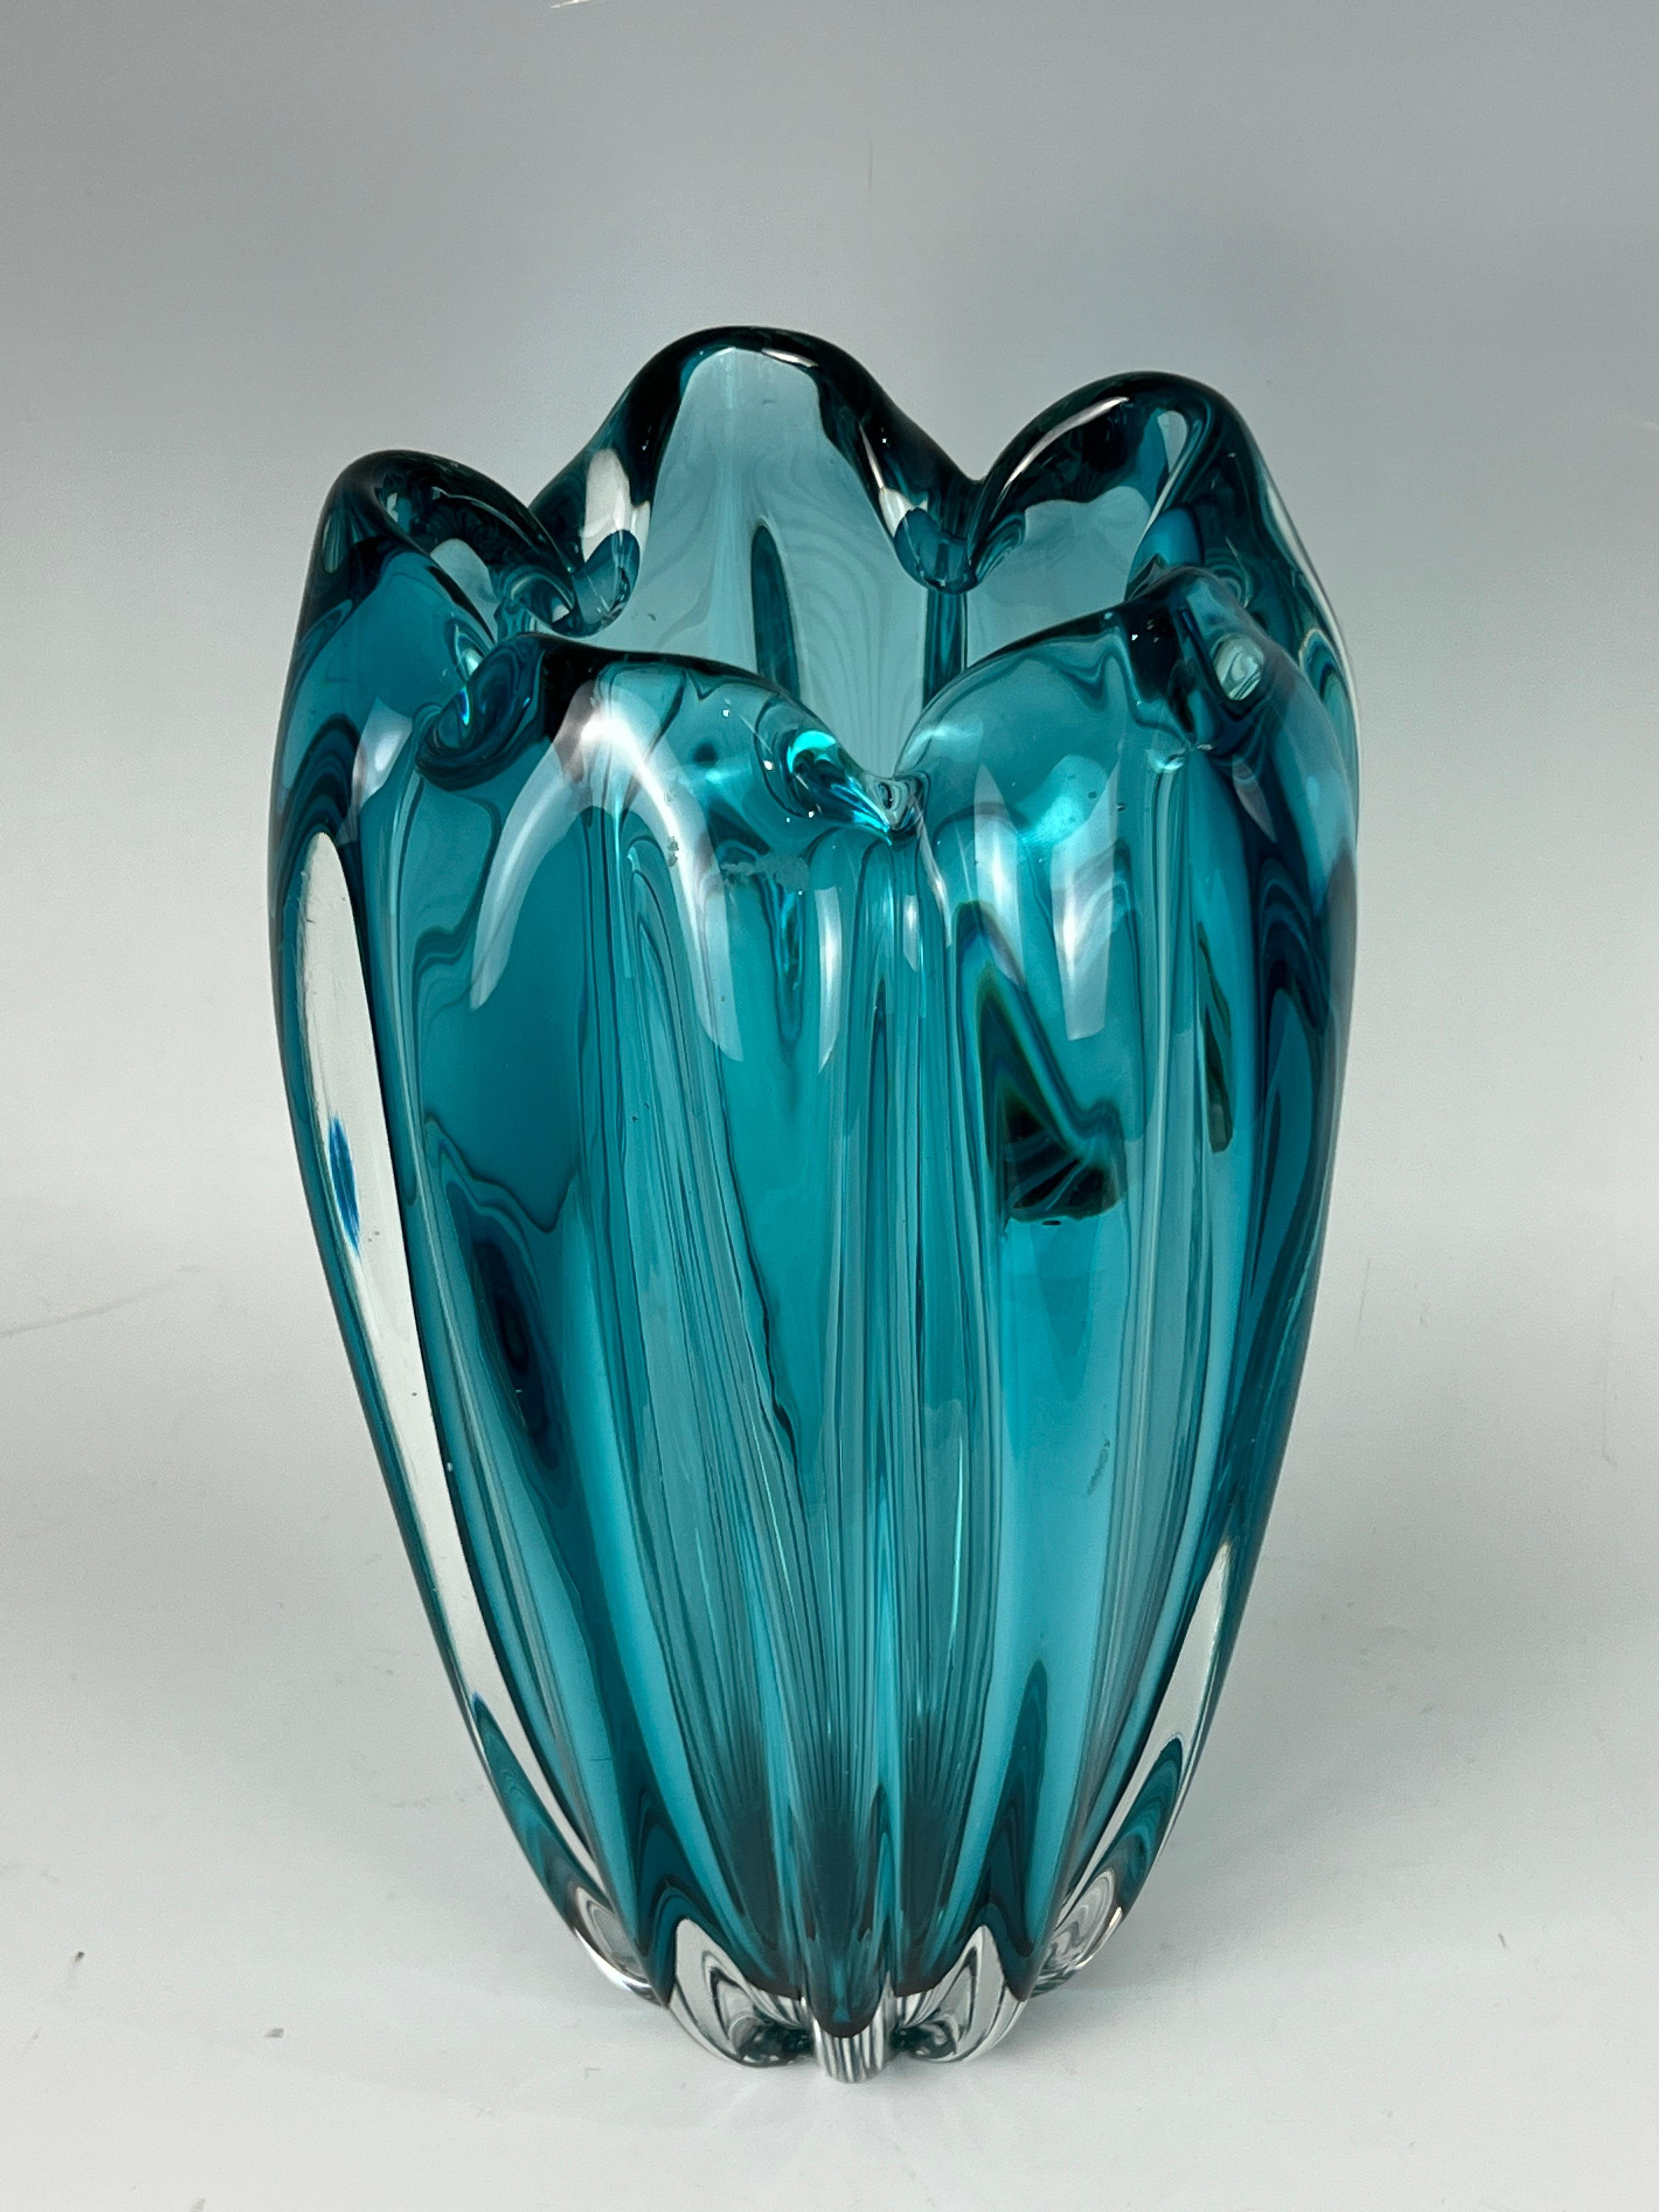 A scalloped Murano glass vase in Acqua color.
Made in Italy
Circa: 1990.